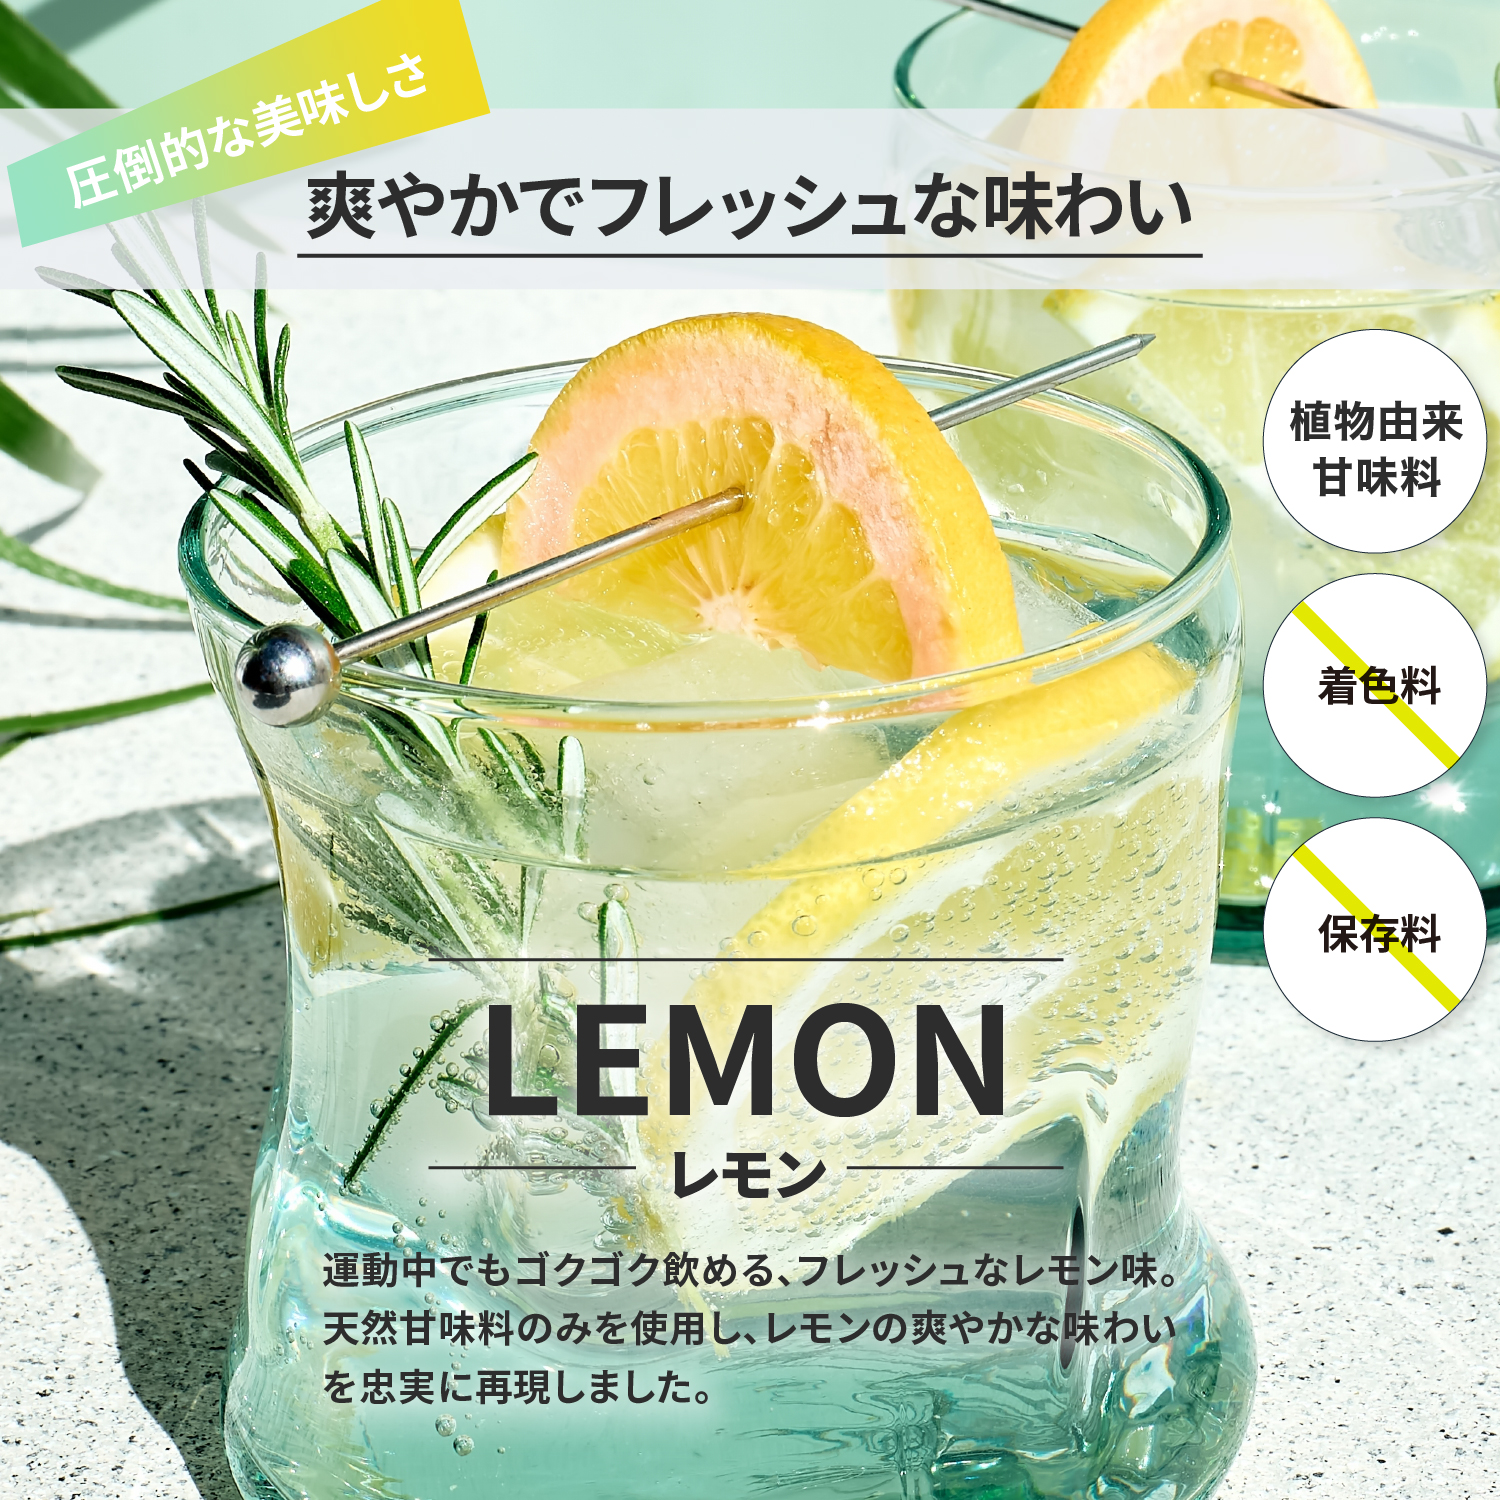 NORMno-m энергия Charge спорт напиток 15 выпуск maru to декстрин лимонная кислота витамин B1 внутренний производство растения ... тест стоимость только использование пудра лимон тест 1 пакет 